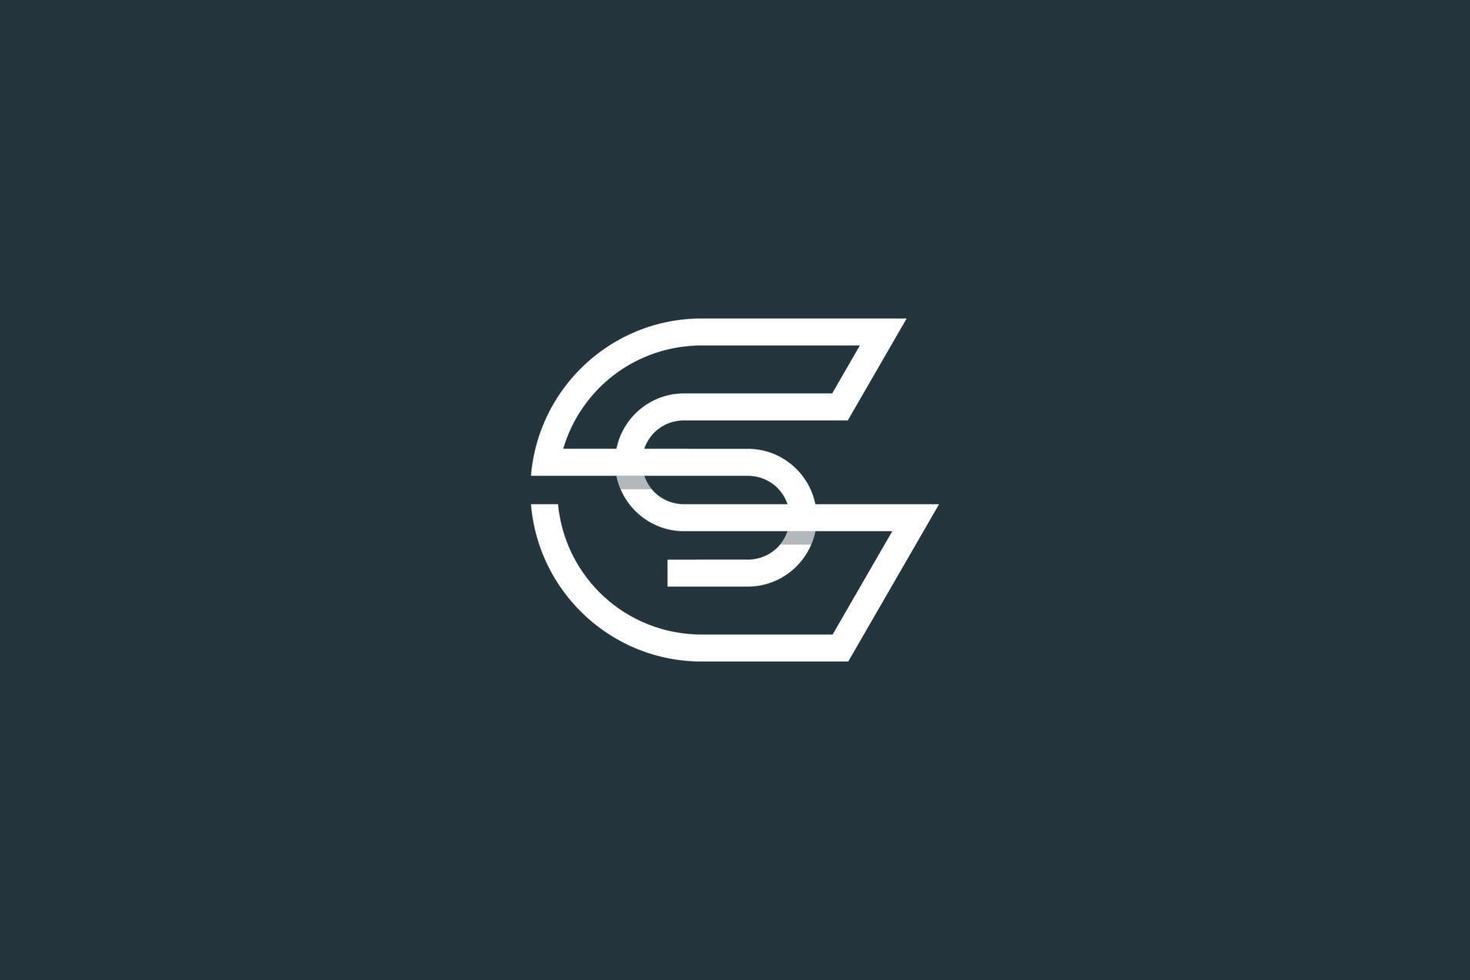 eerste letter gs-logo of sg-logo-ontwerpsjabloon voor vector